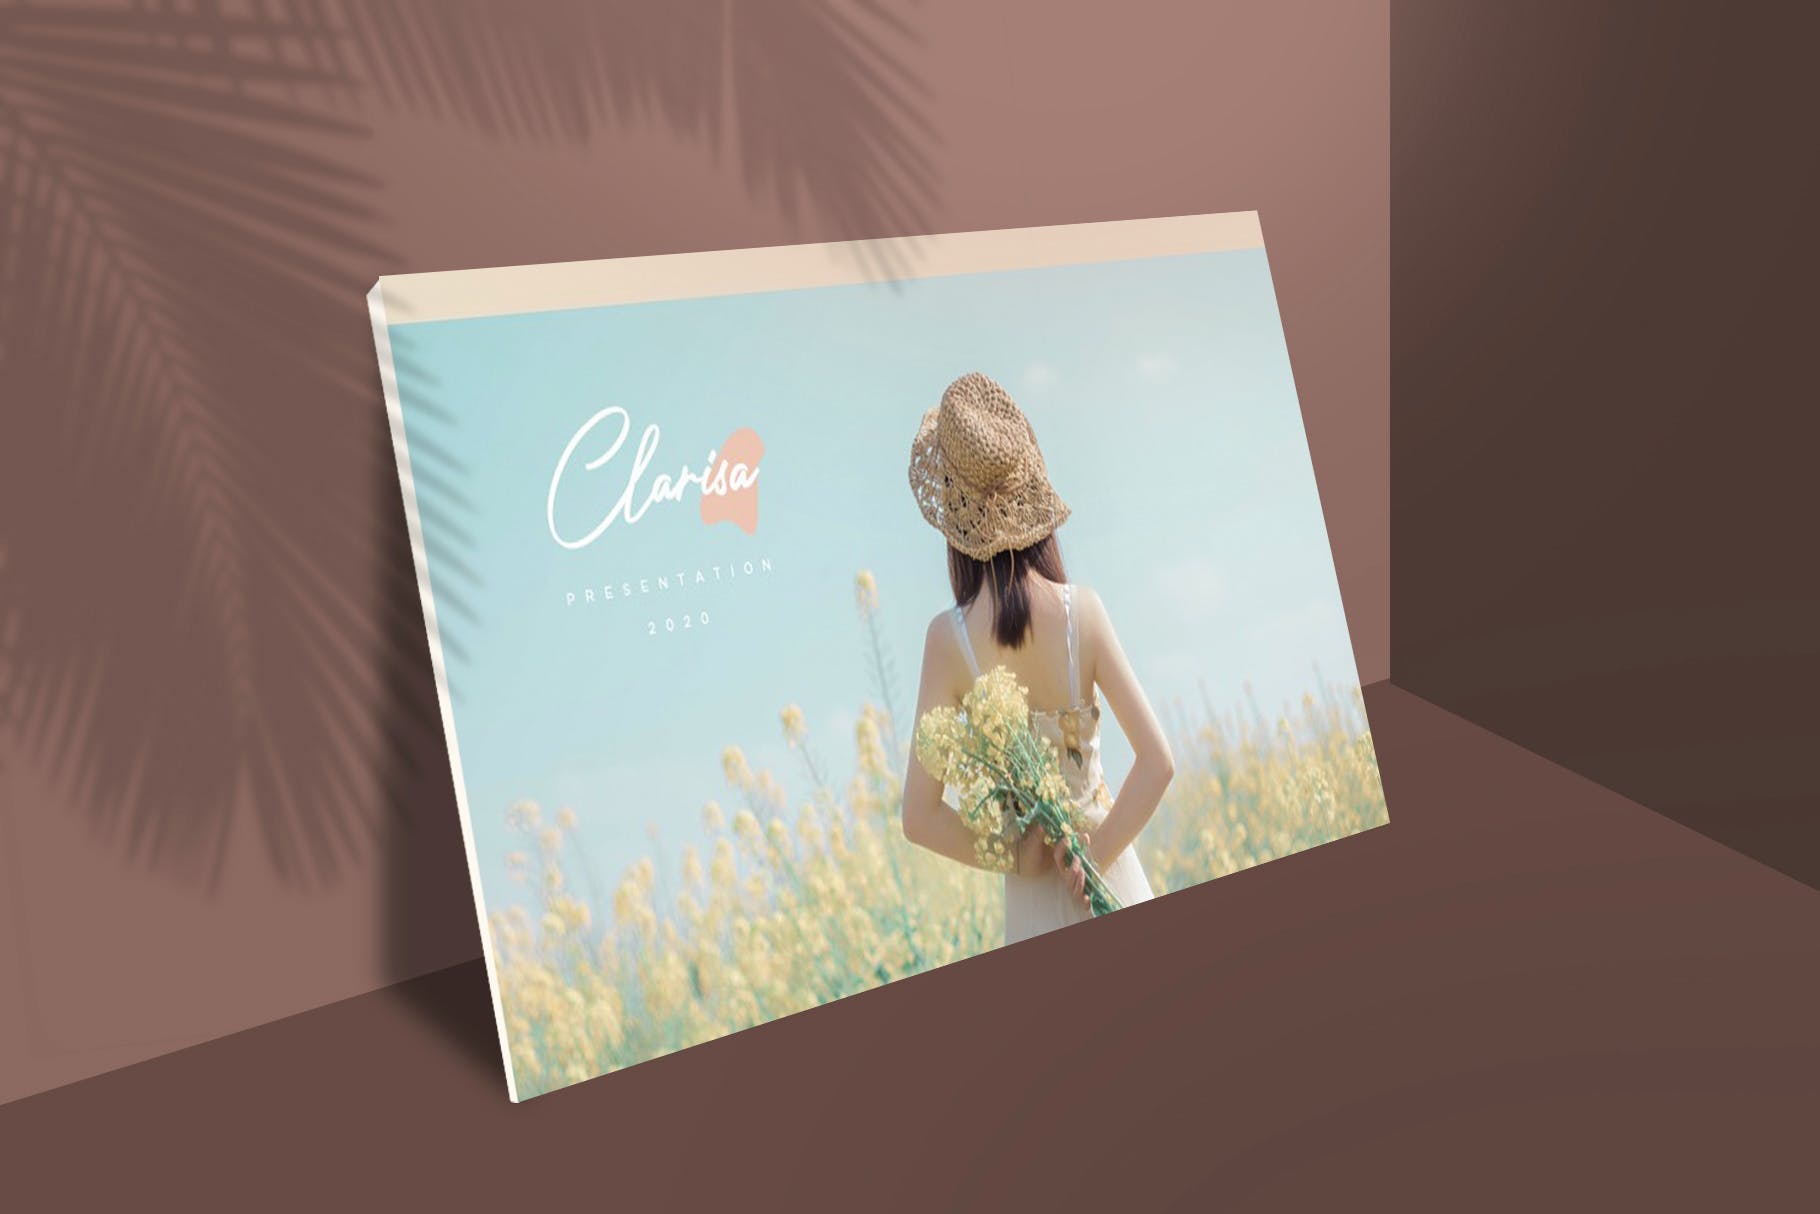 品牌宣传美容美妆PPT演示文稿 CLARISA – Powerpoint Template设计素材模板